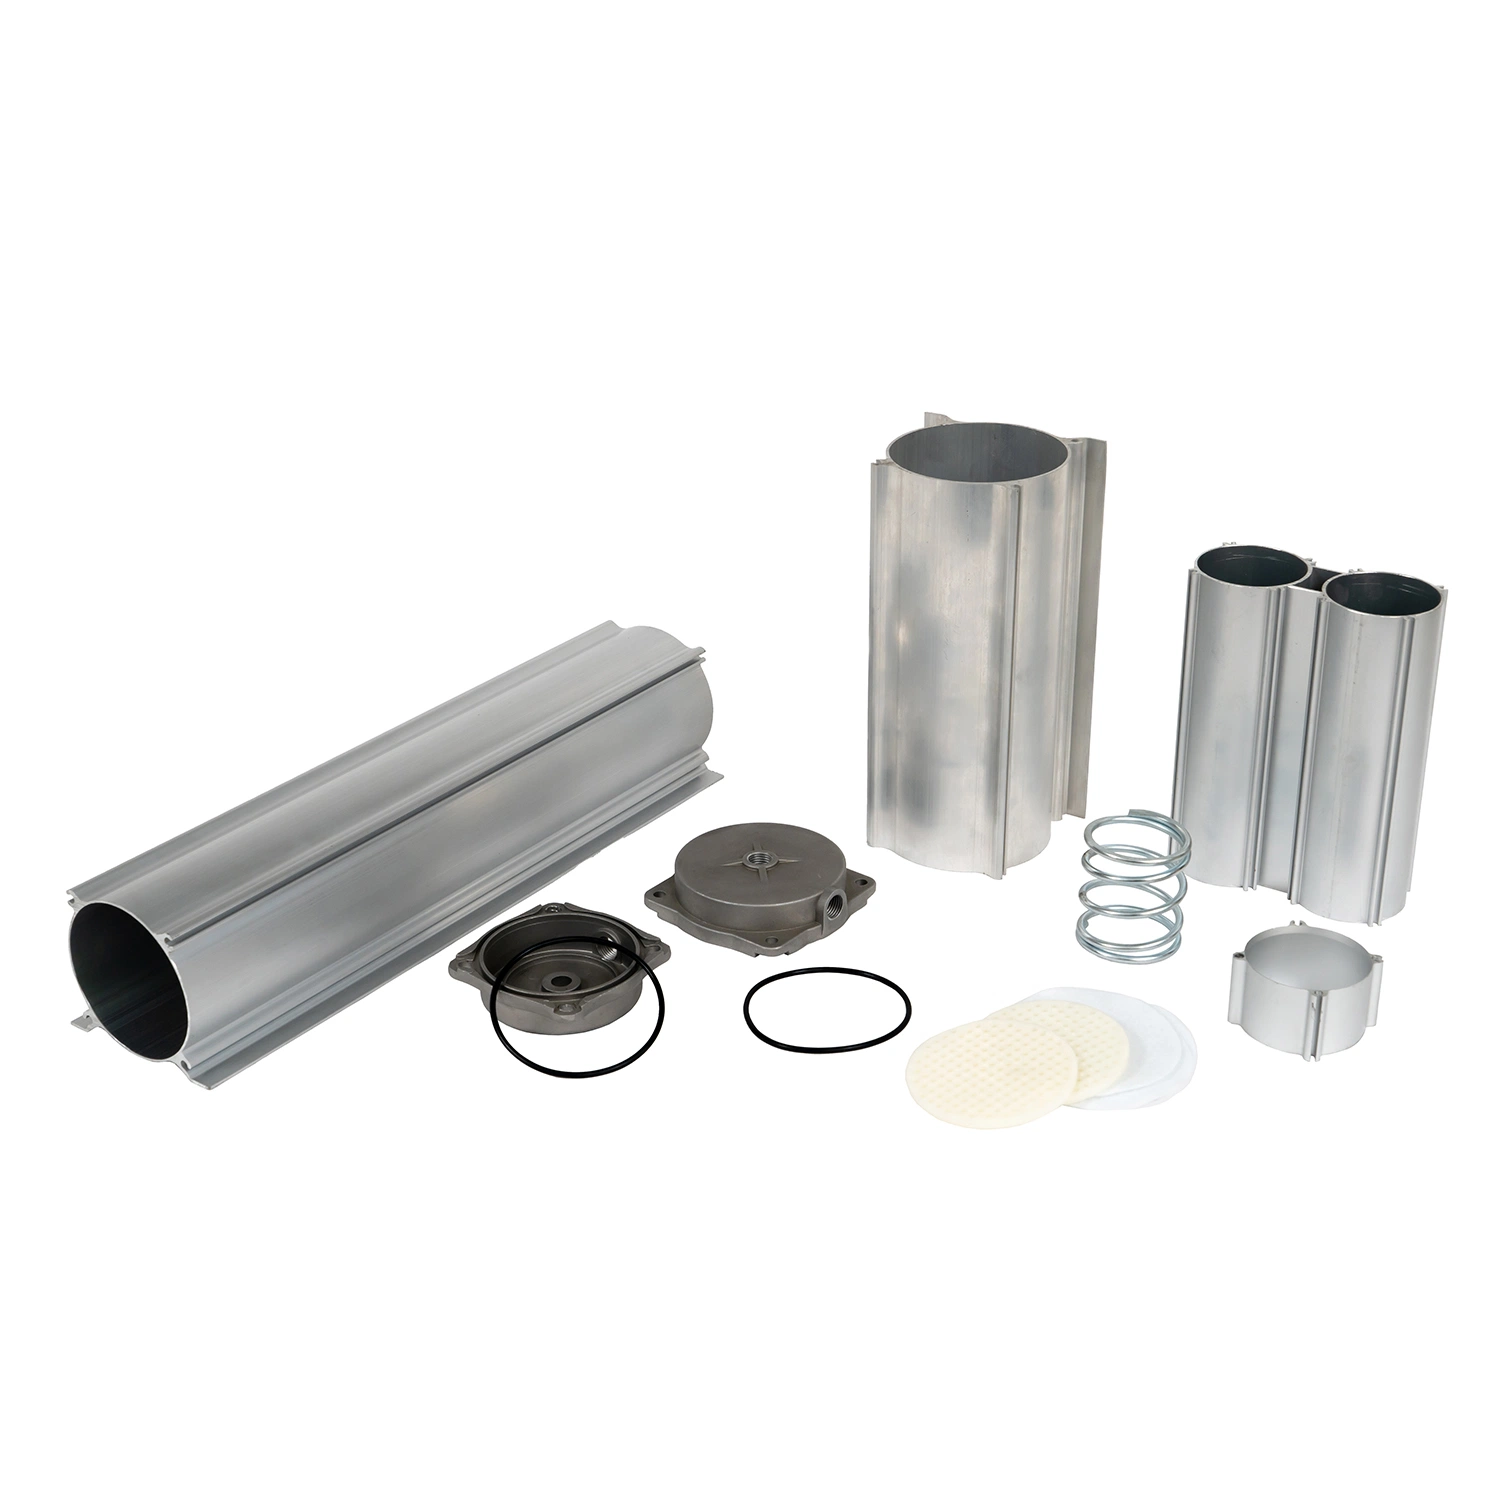 Алюминиевые детали алюминиевой тубе Адсорбционная колонна цеолитовый бак генератор кислорода для дома/медицинского